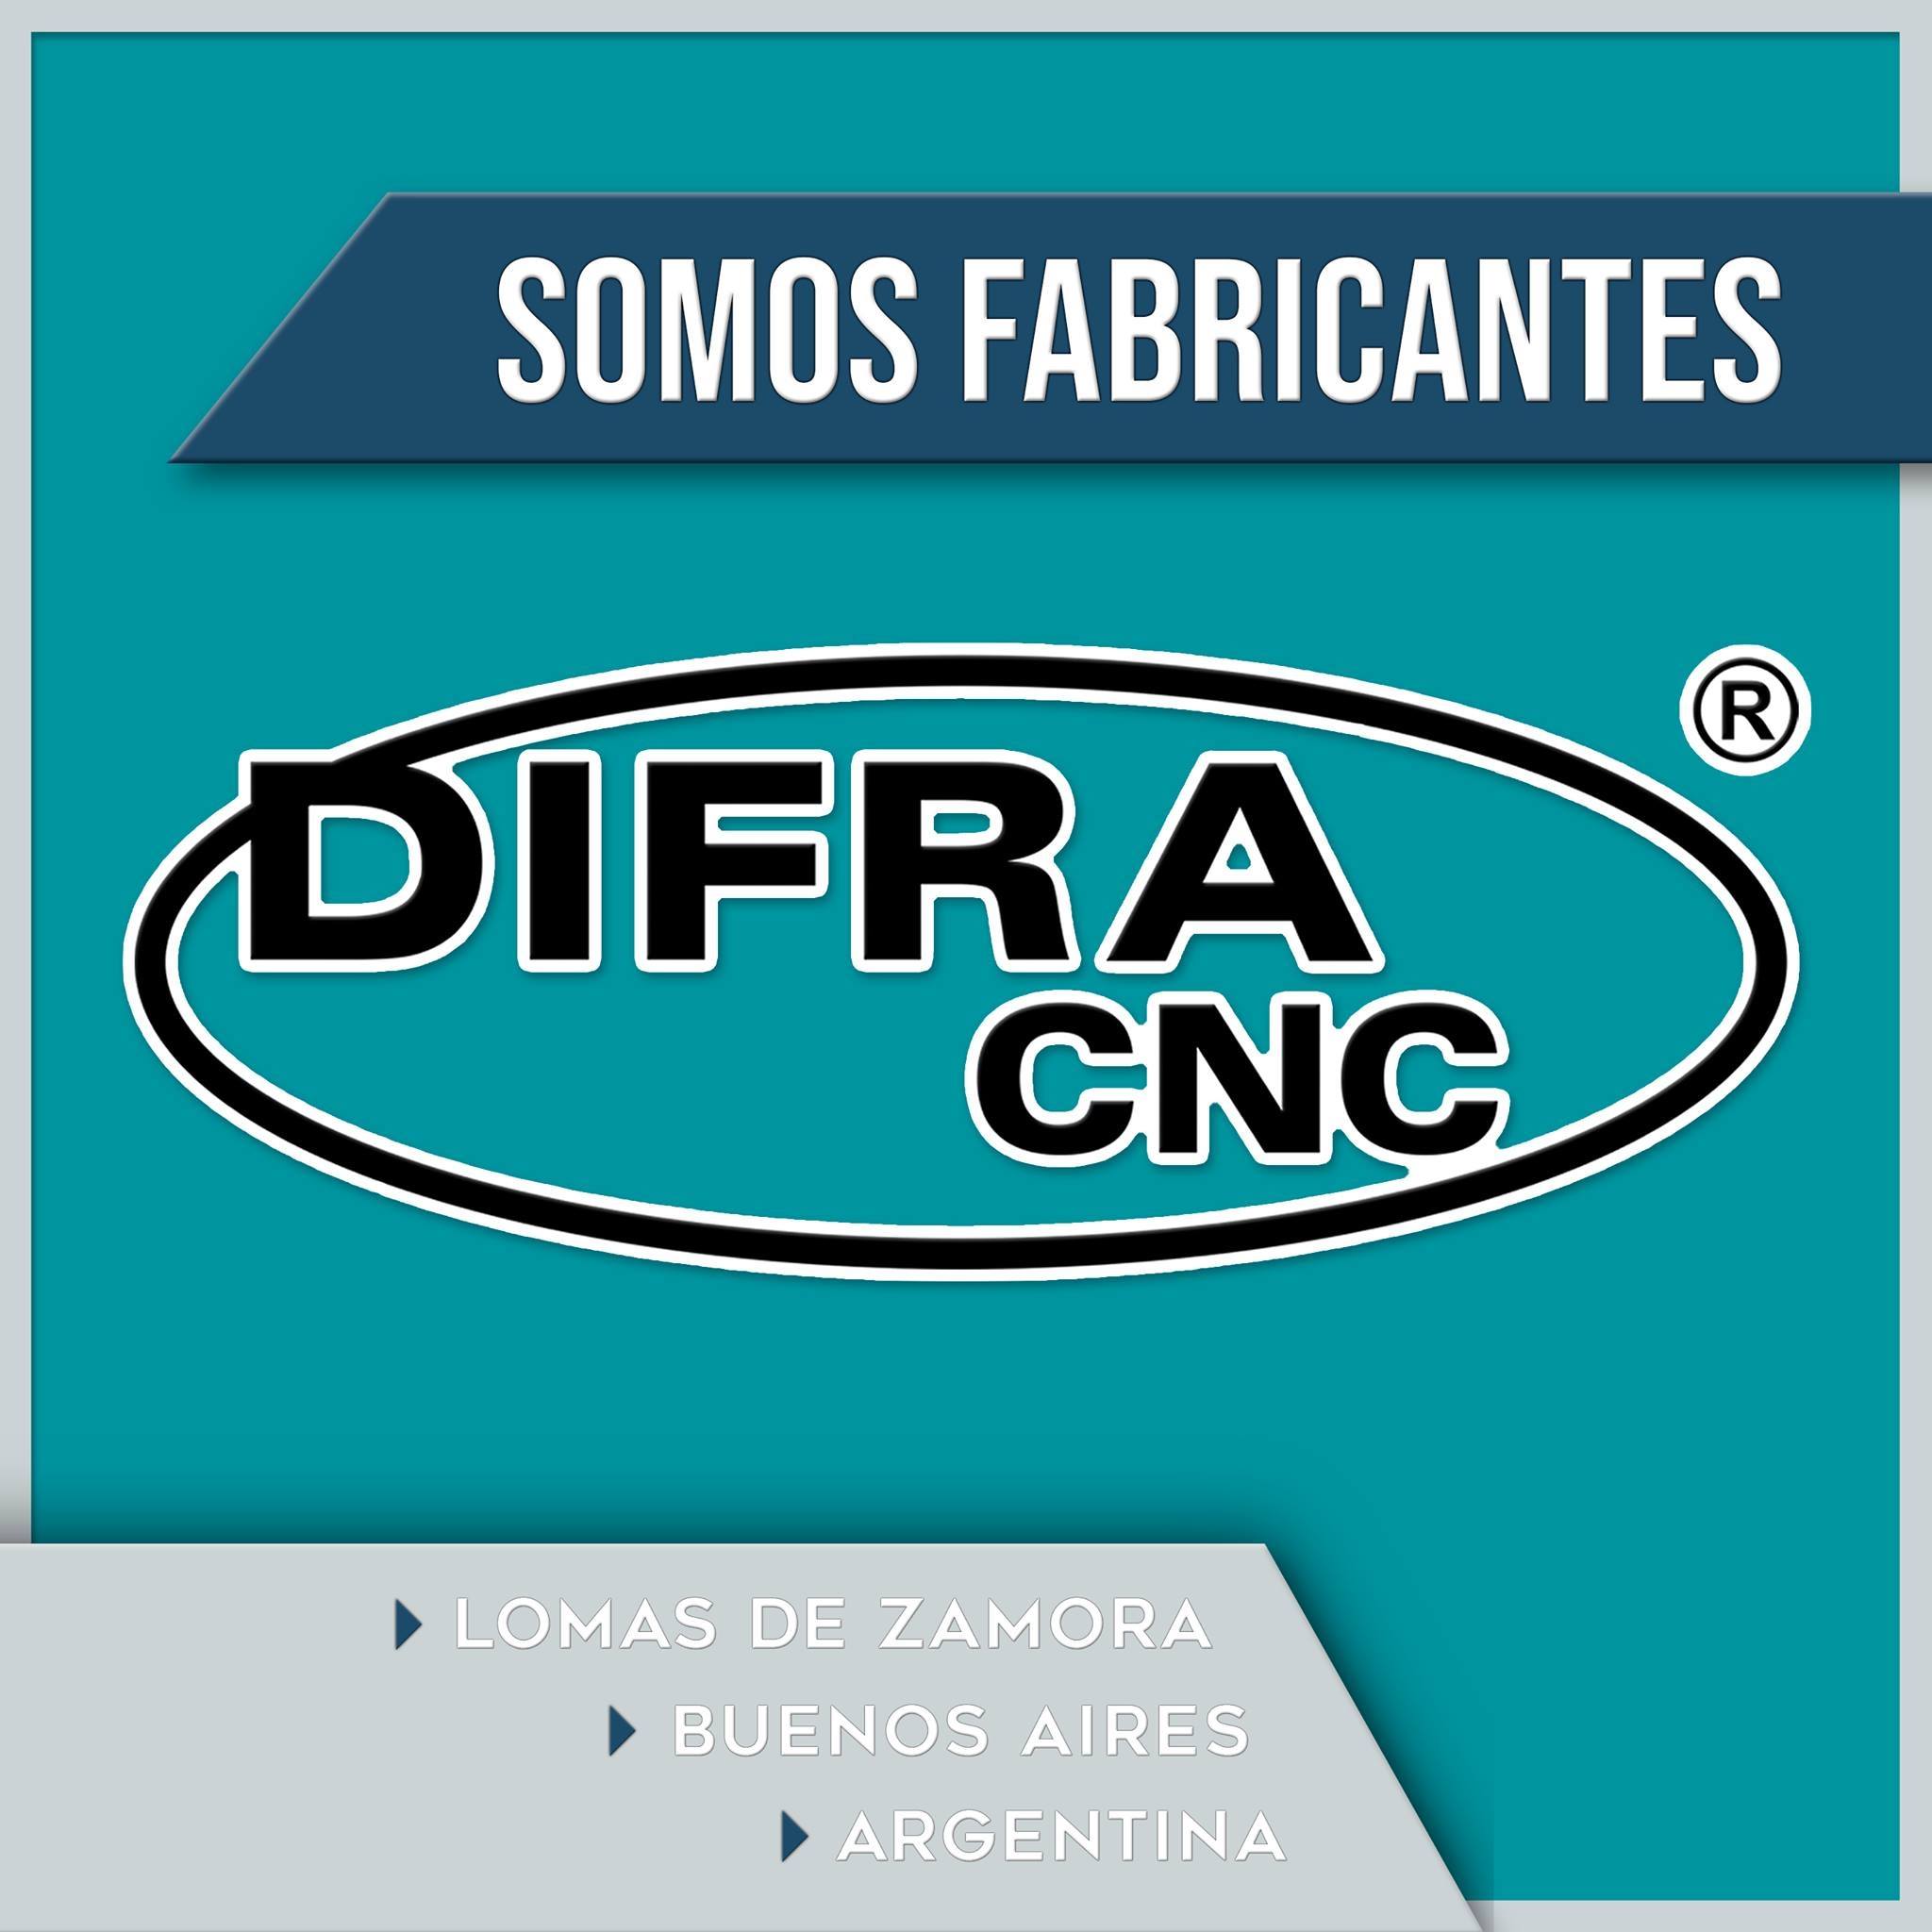 Difra CNC